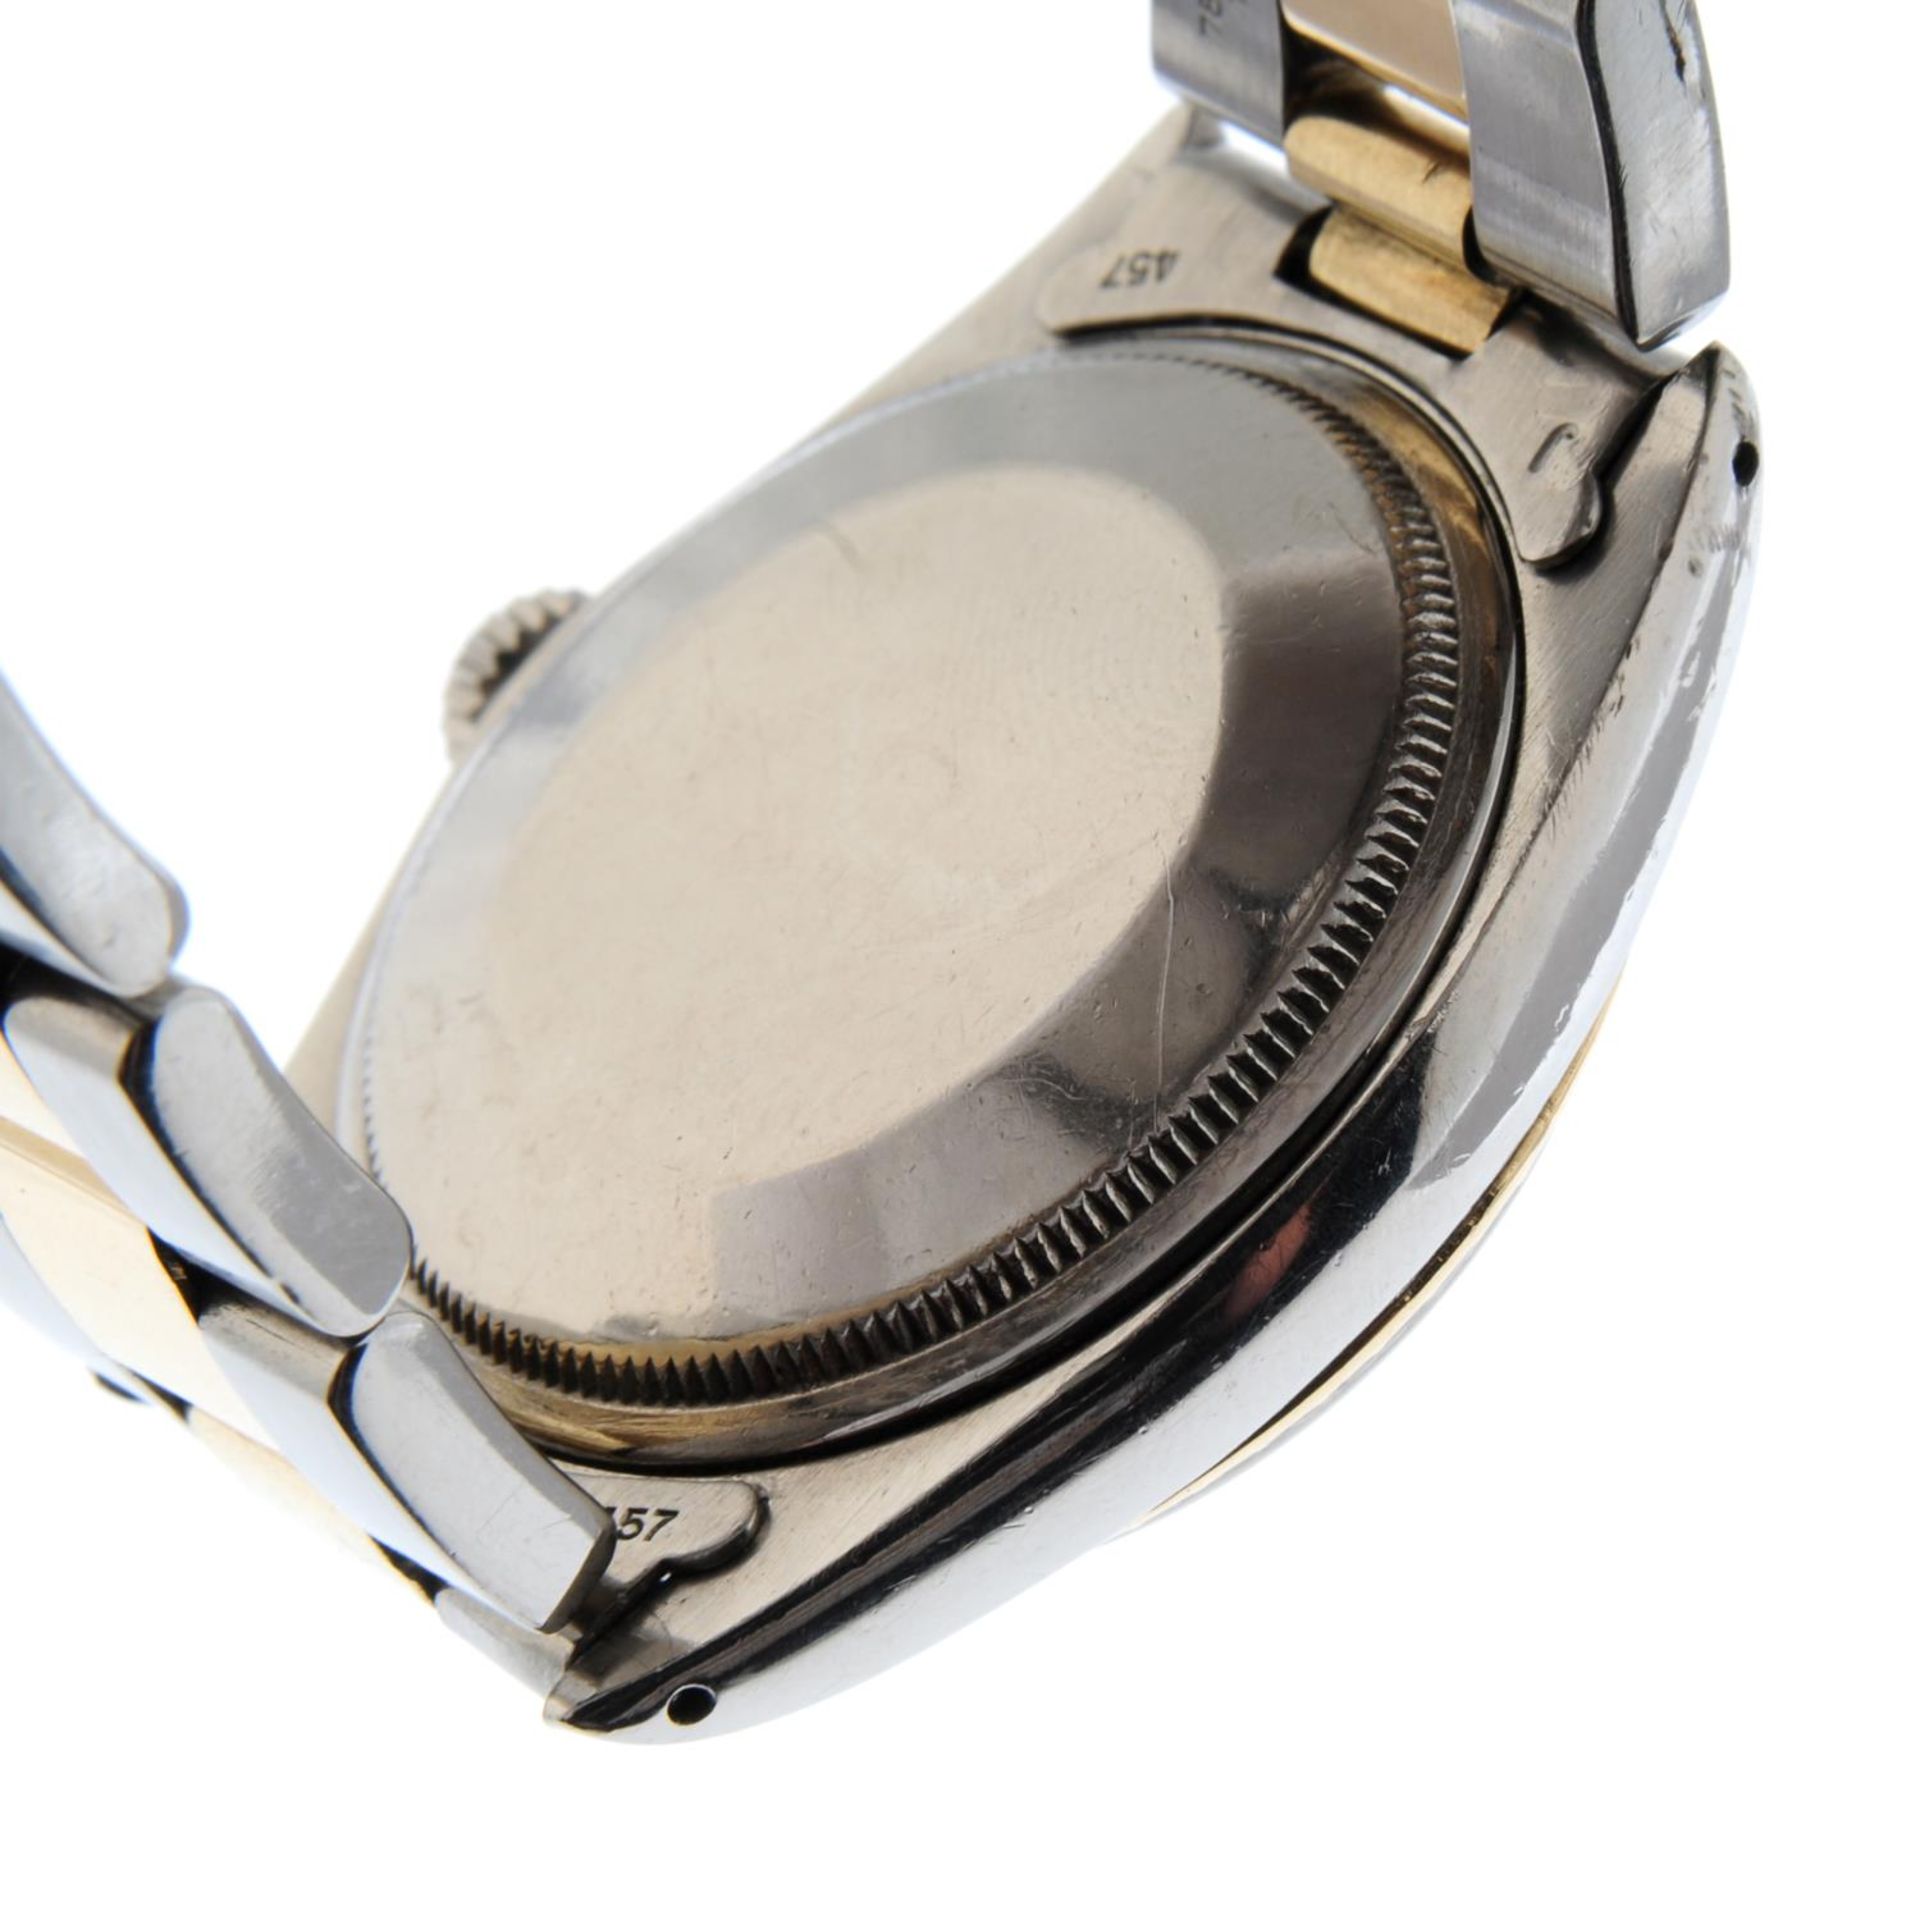 ROLEX - an Oyster Perpetual Date bracelet watch. - Bild 2 aus 6